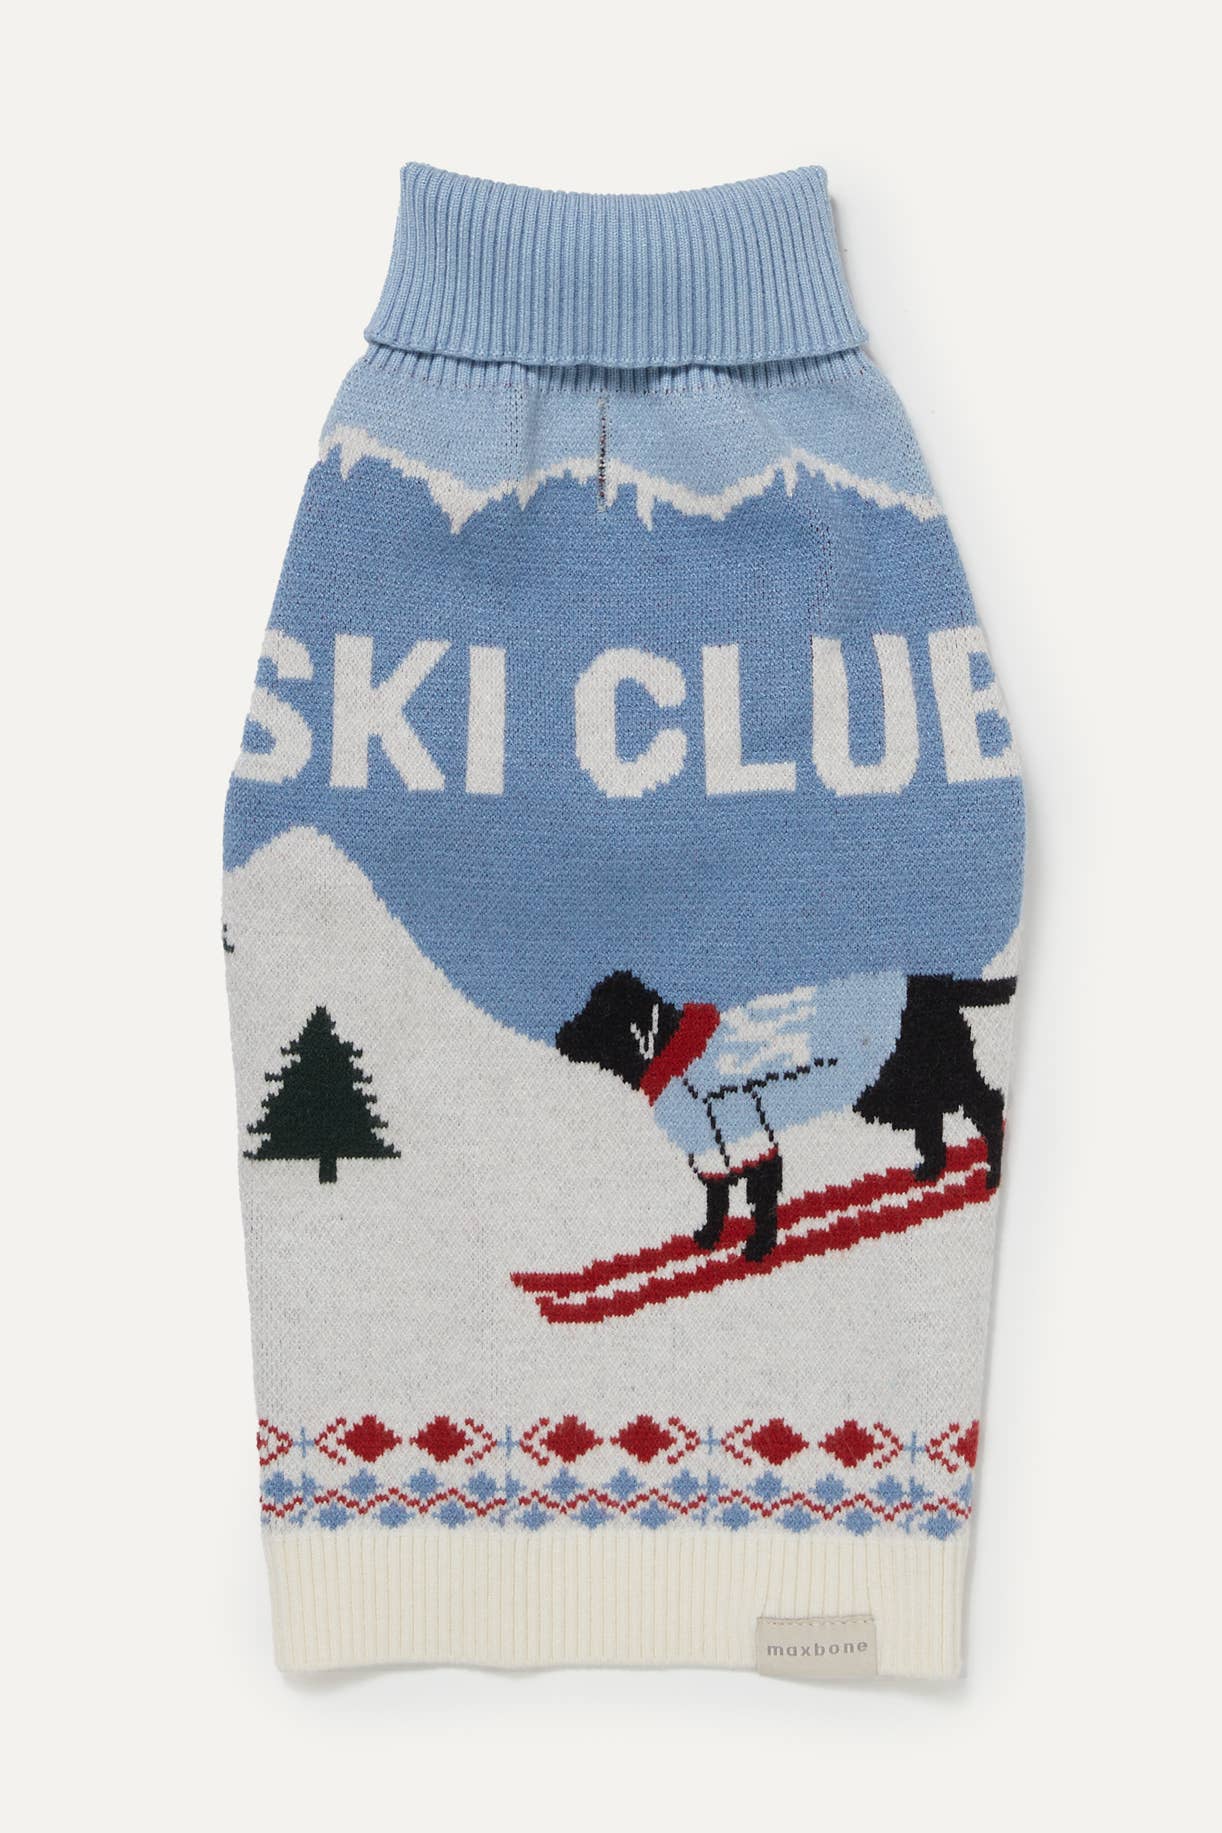 Ski Club Jumper